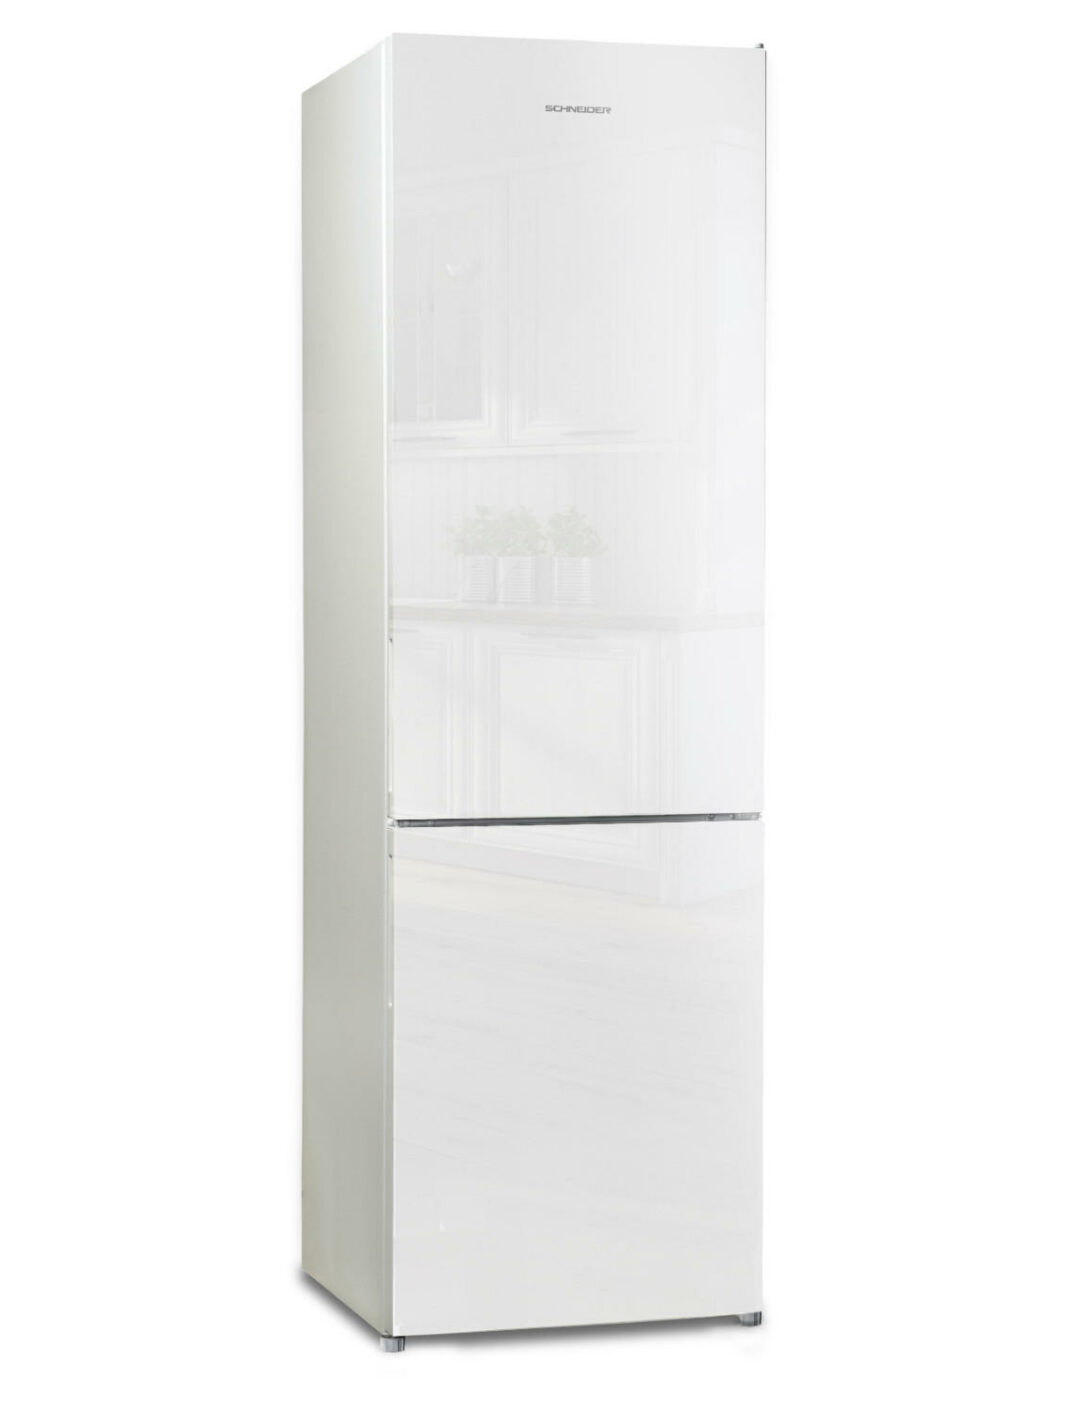 Refrigerator freezer black 250 L - Schneider